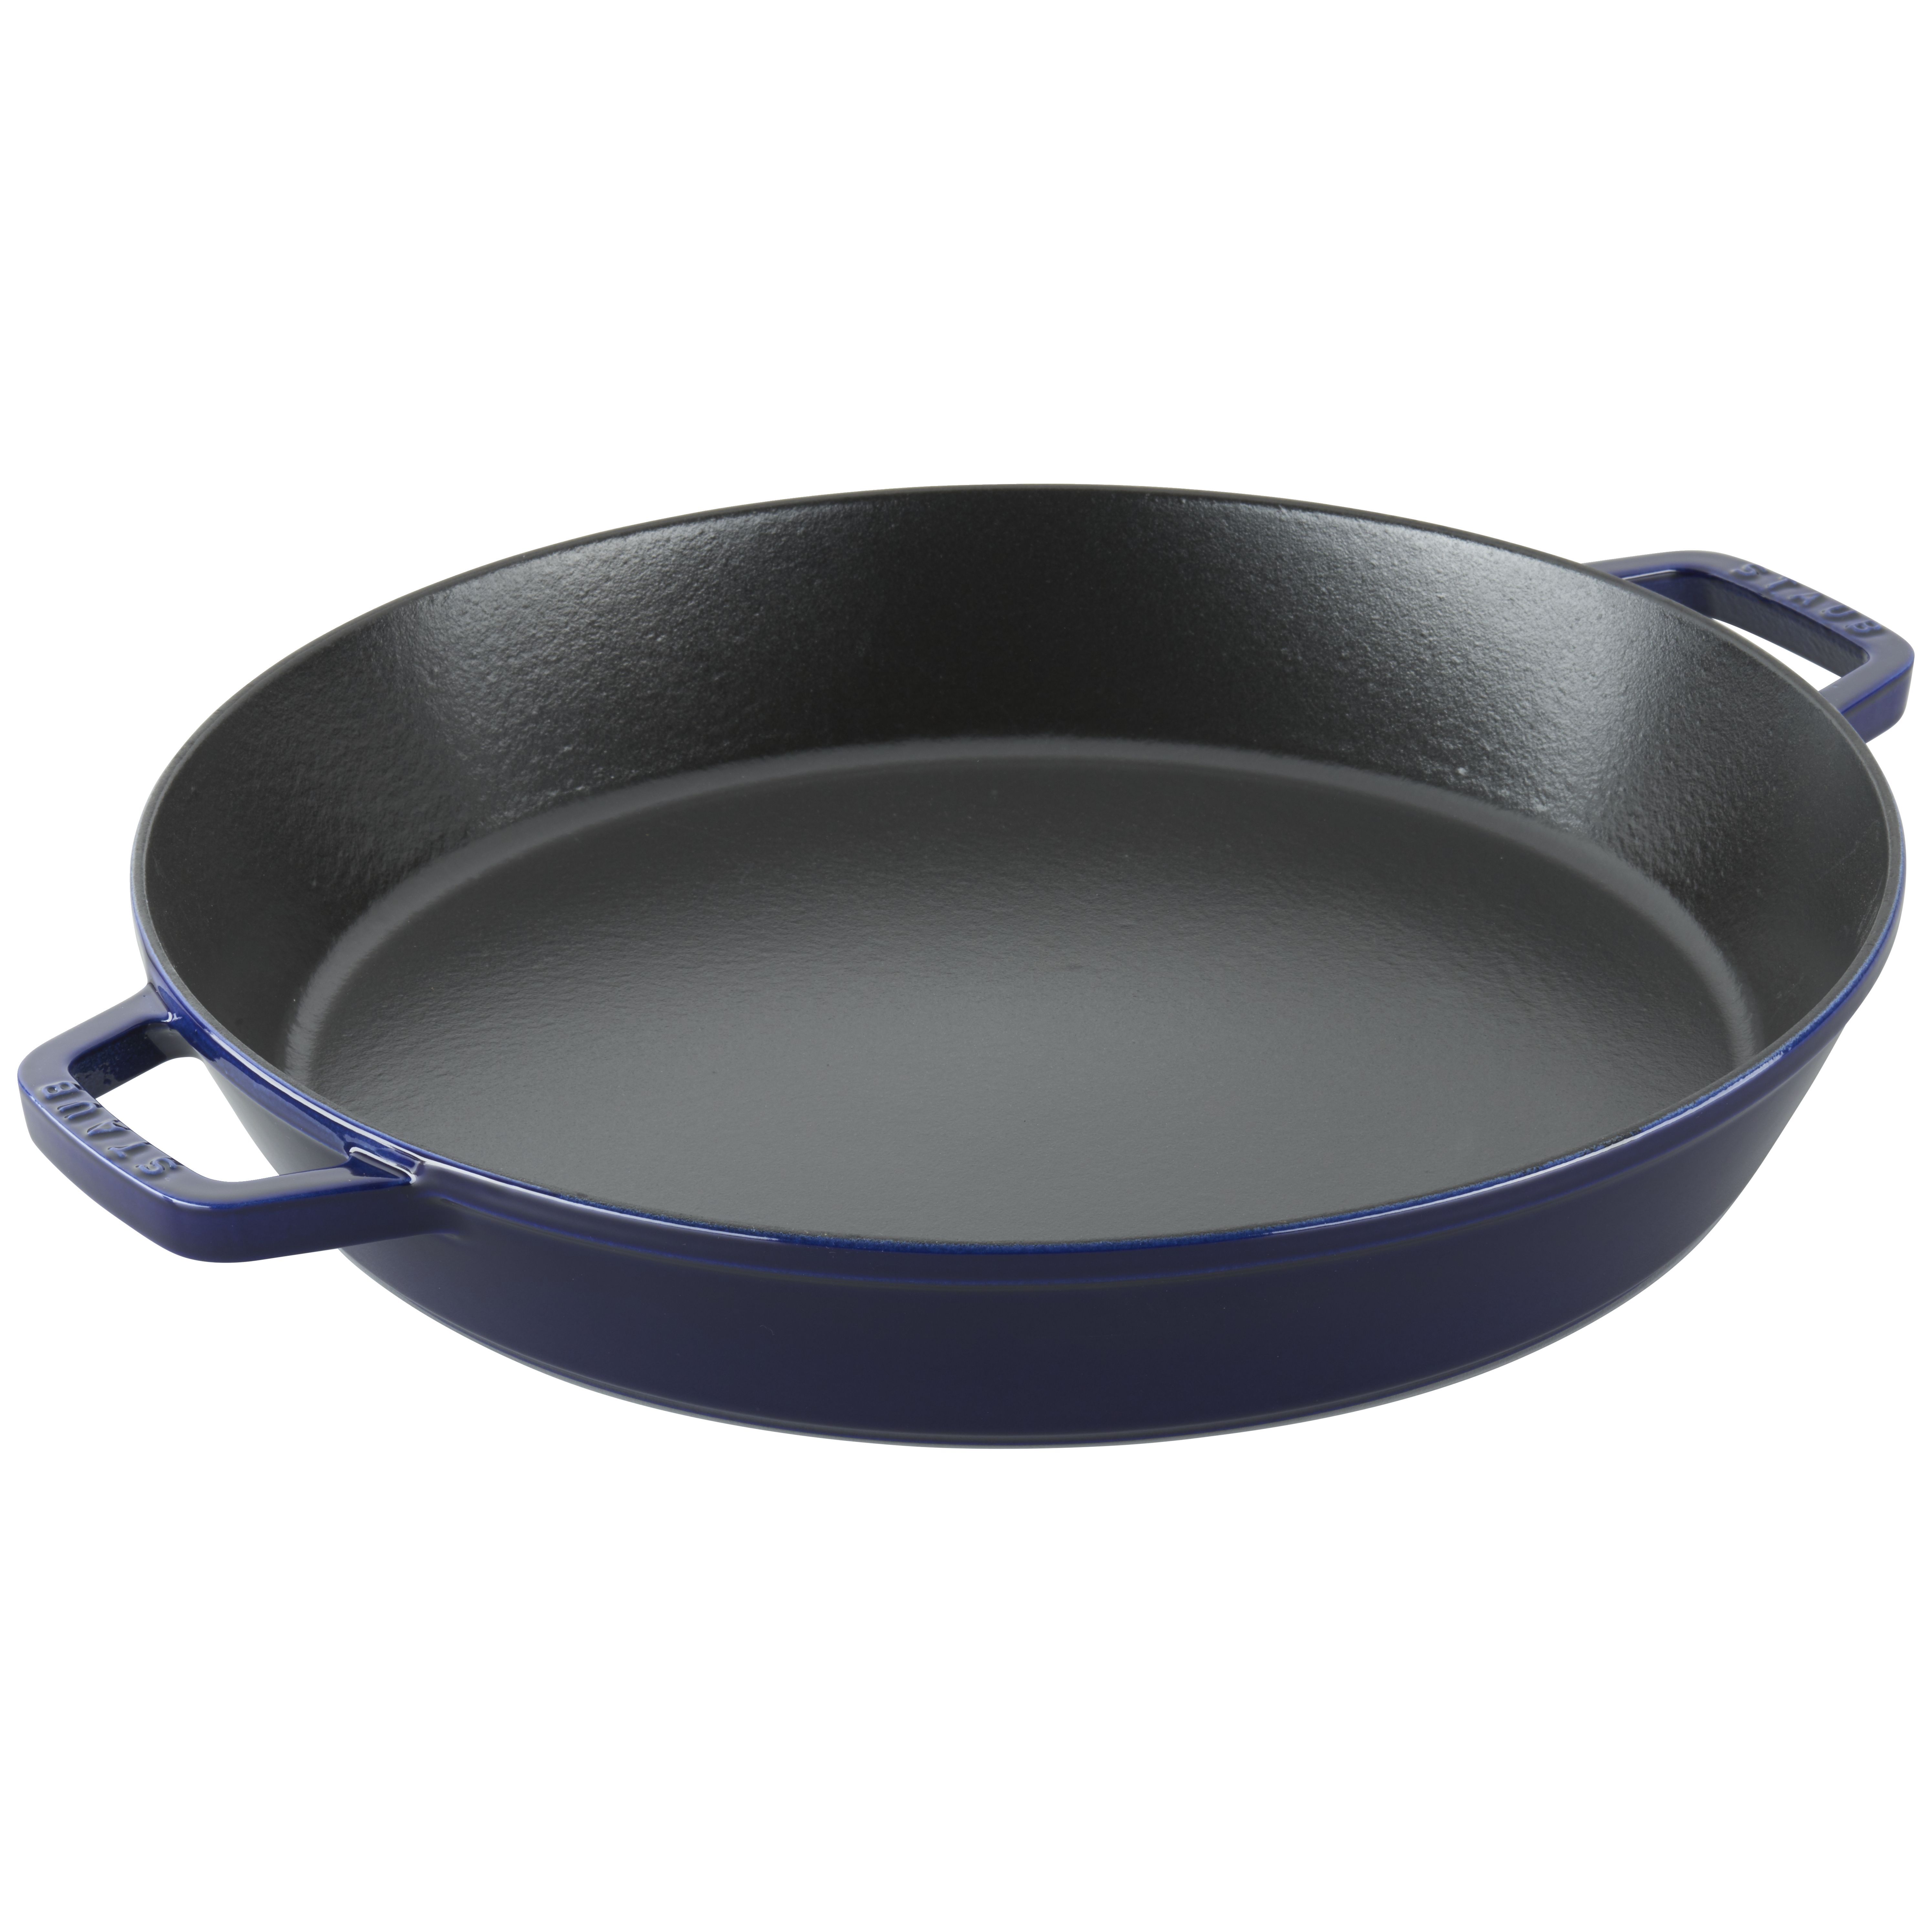 2 handle frying pan